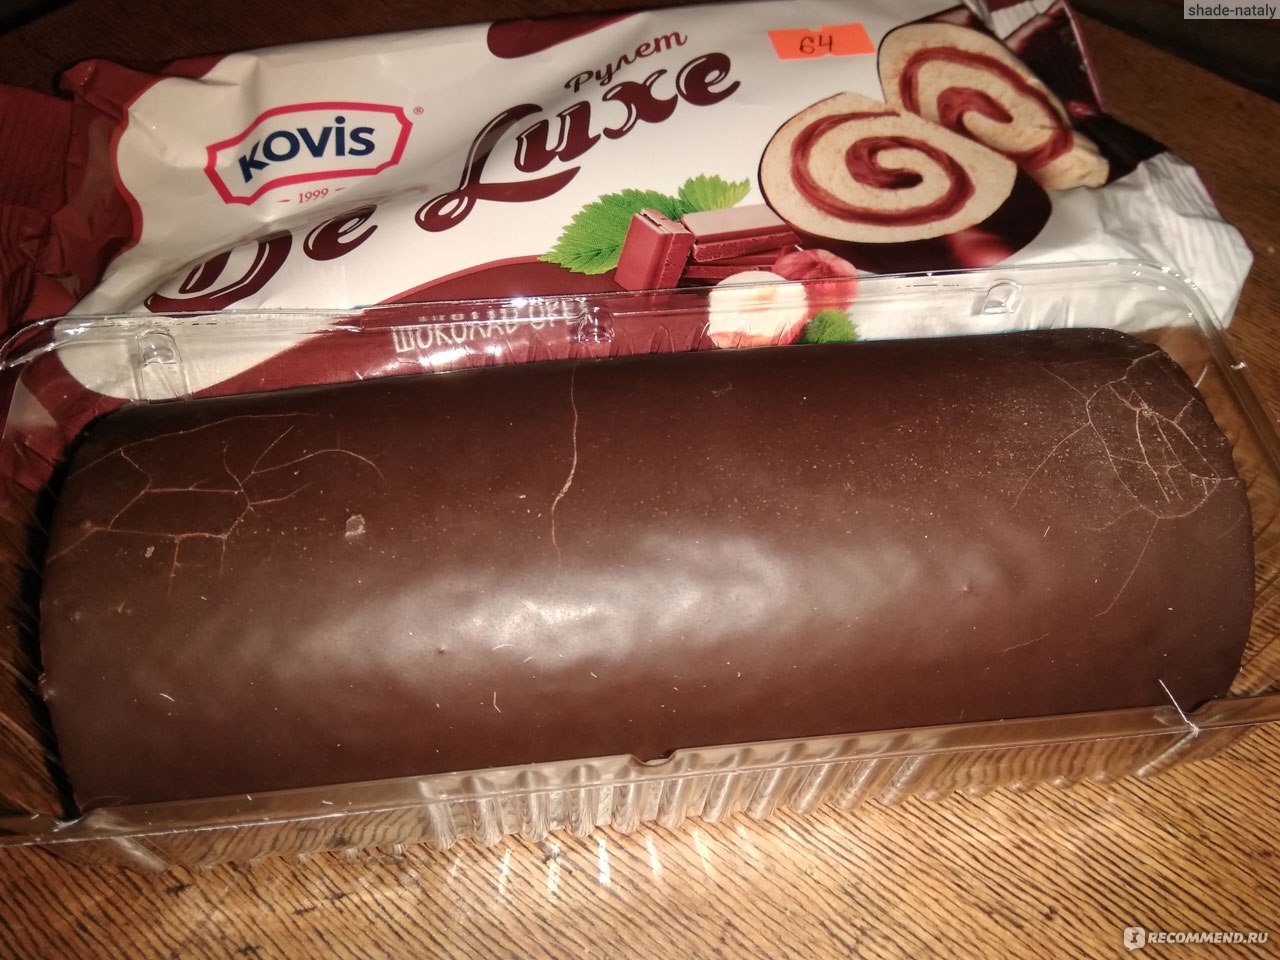 Бисквитный рулет Kovis de Luxe шоколад-орех